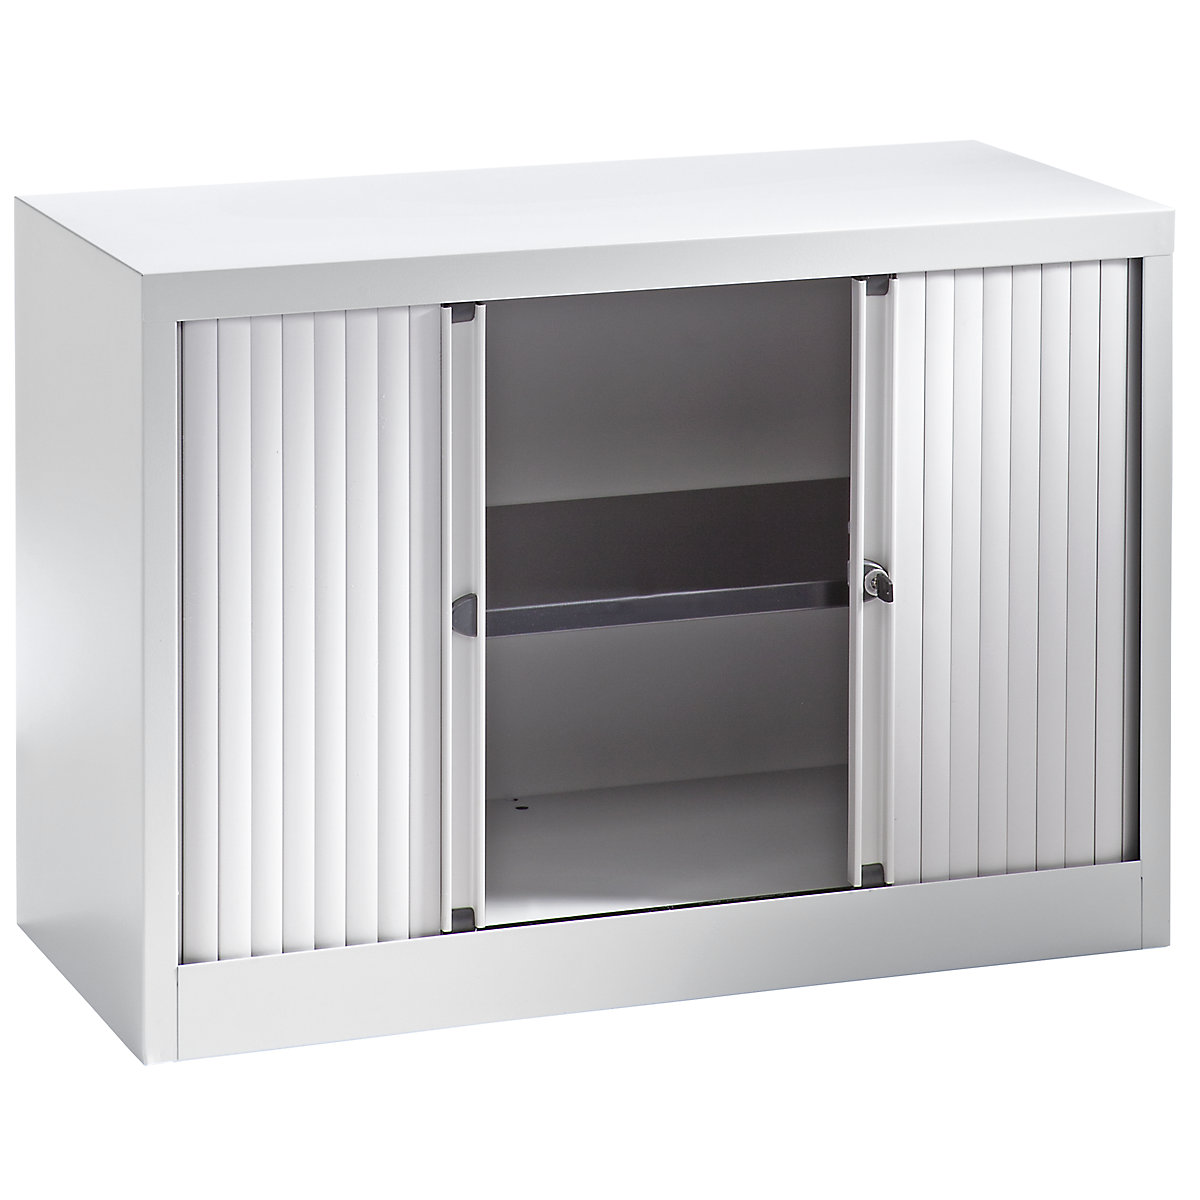 EURO roller shutter cupboard – BISLEY, width 1000 mm, 1 shelf, light grey-6